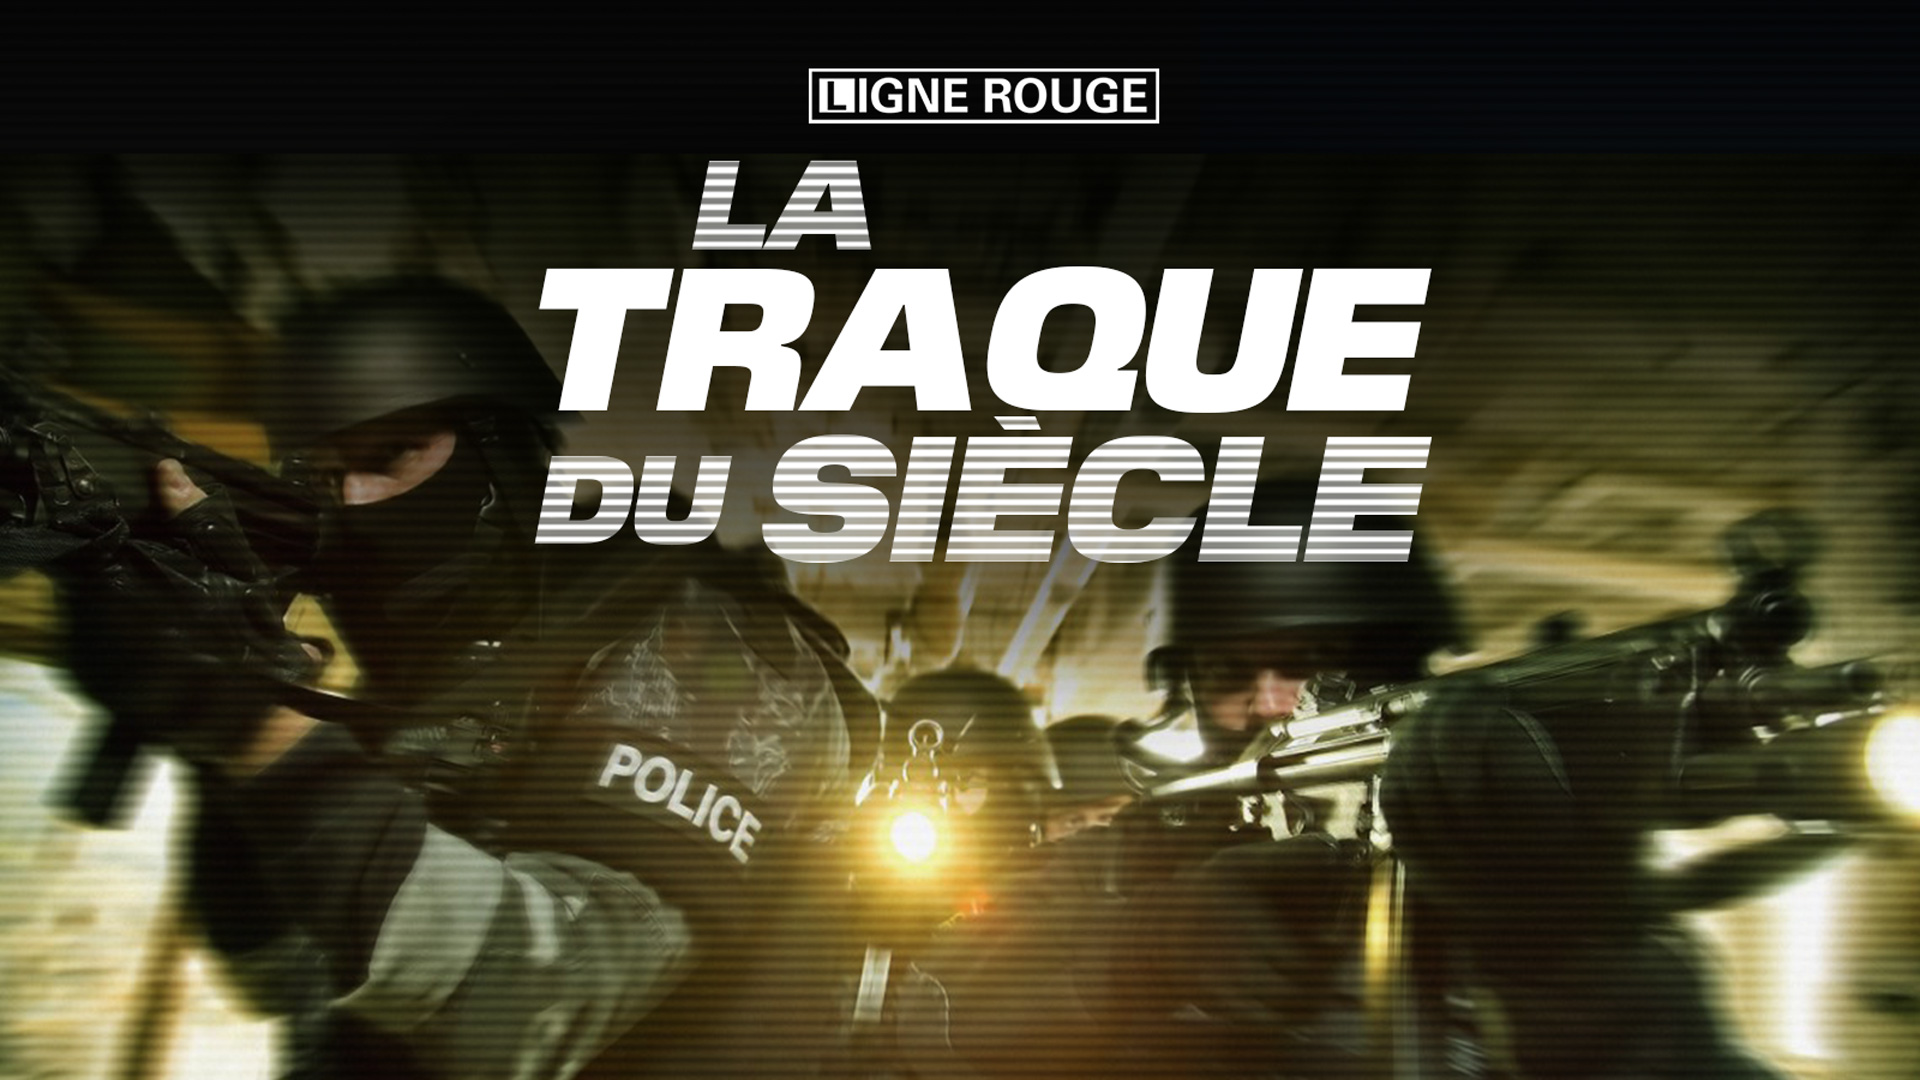 France tv distribution acquiert pour France TV le documentaire «La Traque  des oligarques»